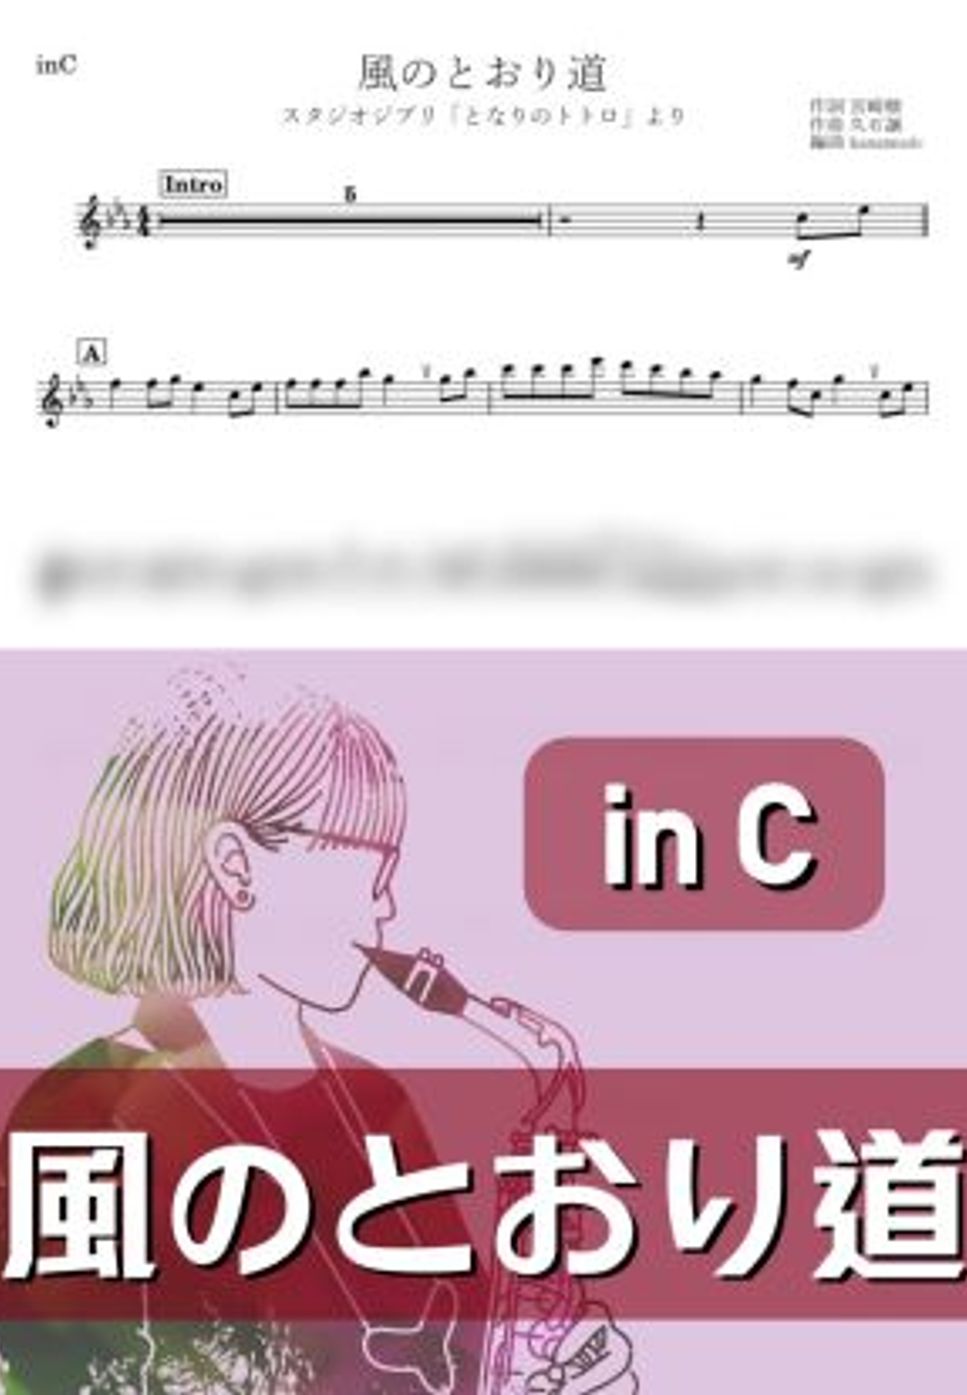 となりのトトロ - 風のとおり道 (C) by kanamusic